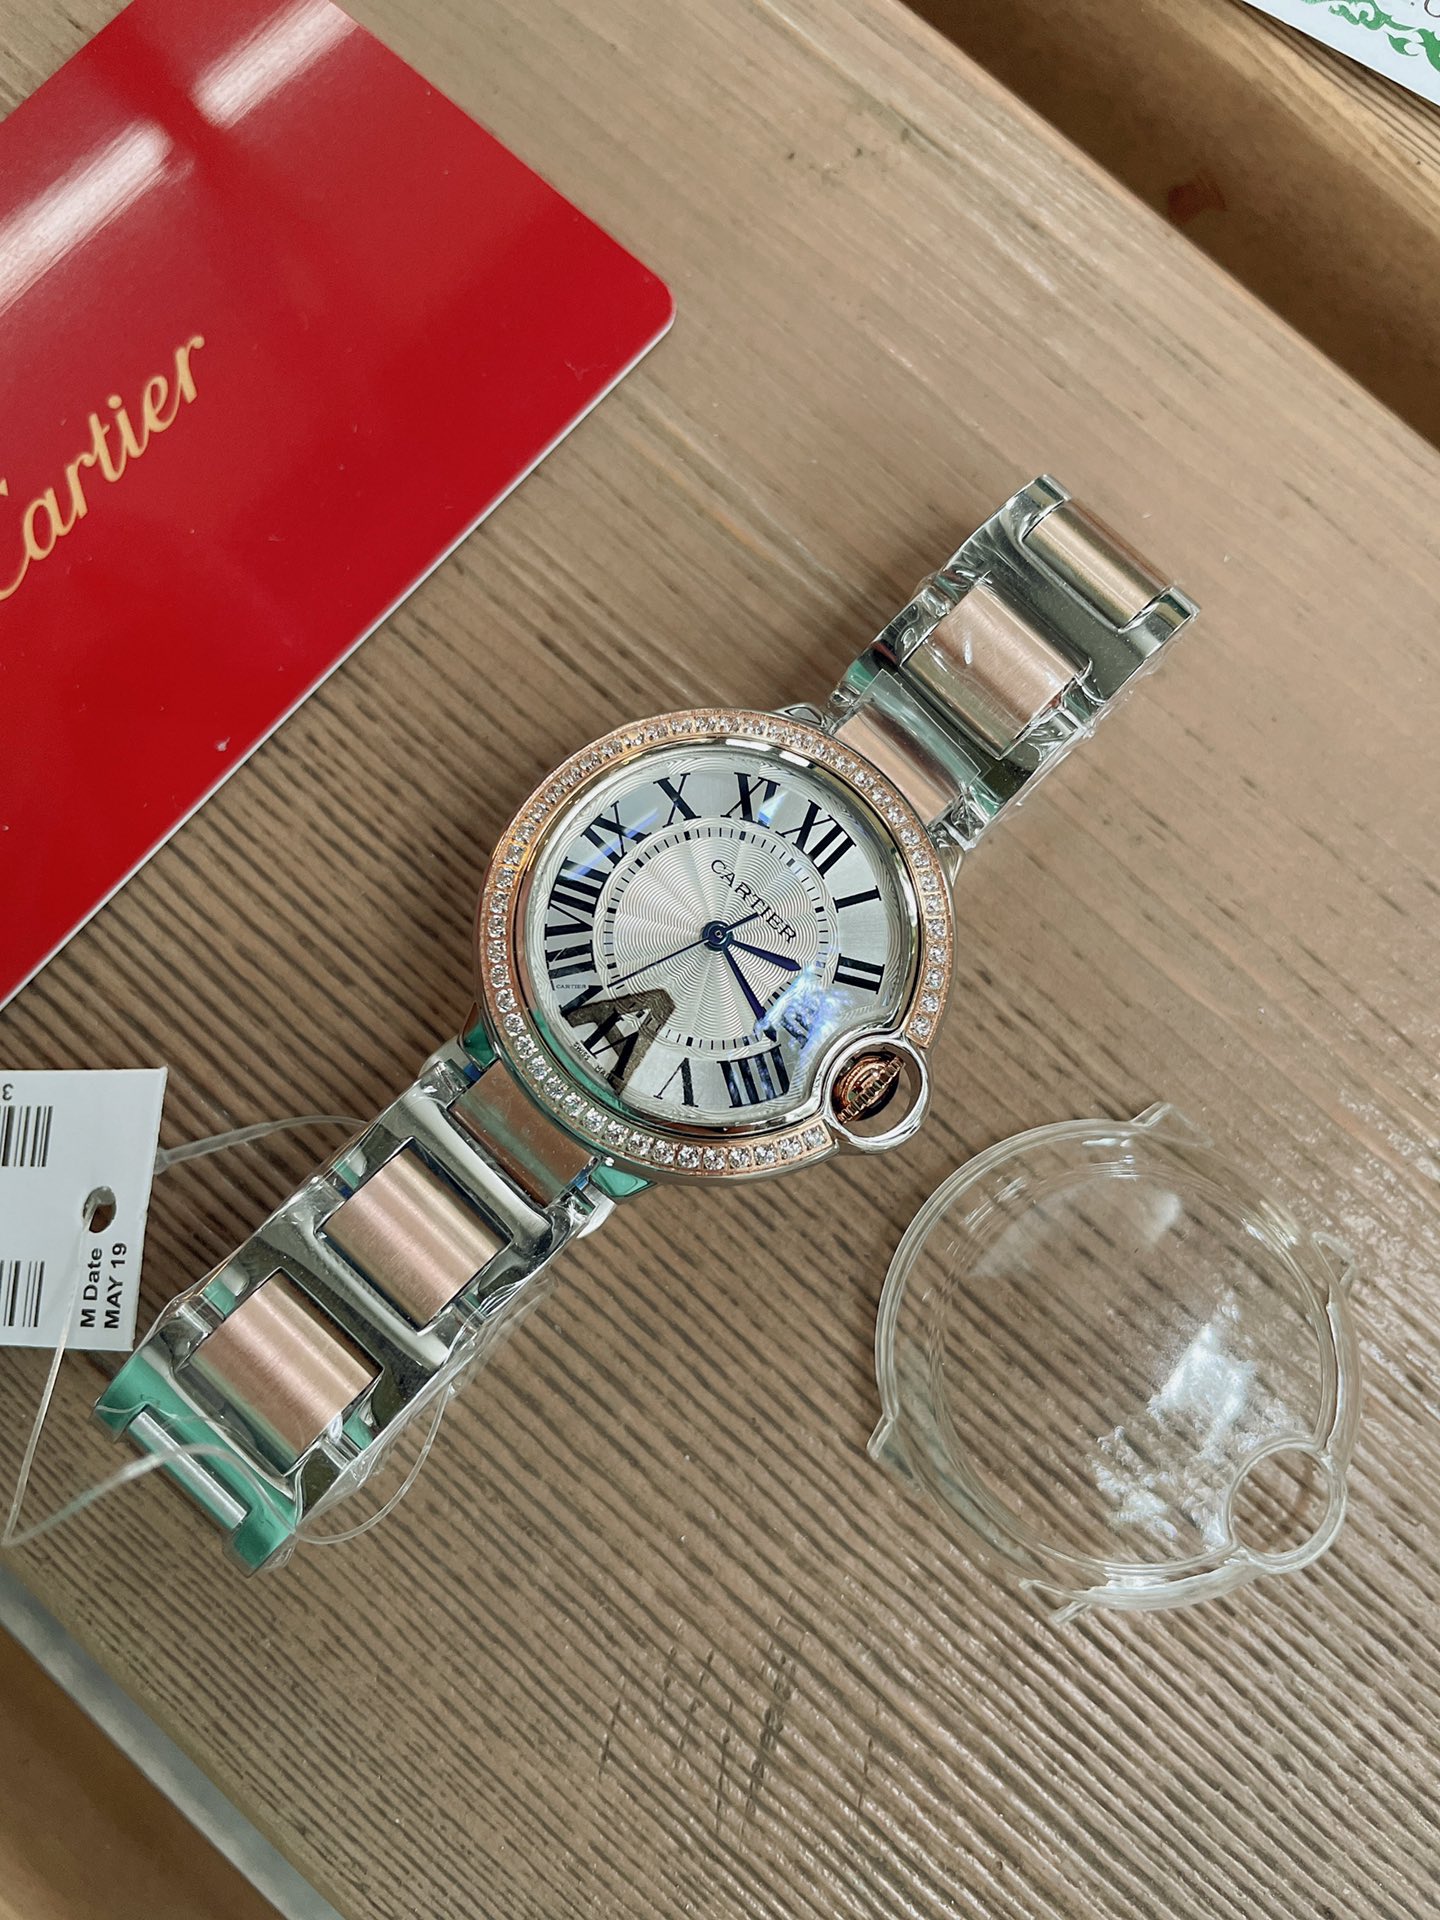 「ダイヤモンドなし」CARTIERカルティエ 時計 中身コピー フランス 薄い腕時計 軽量 レディース 最新商品 _4